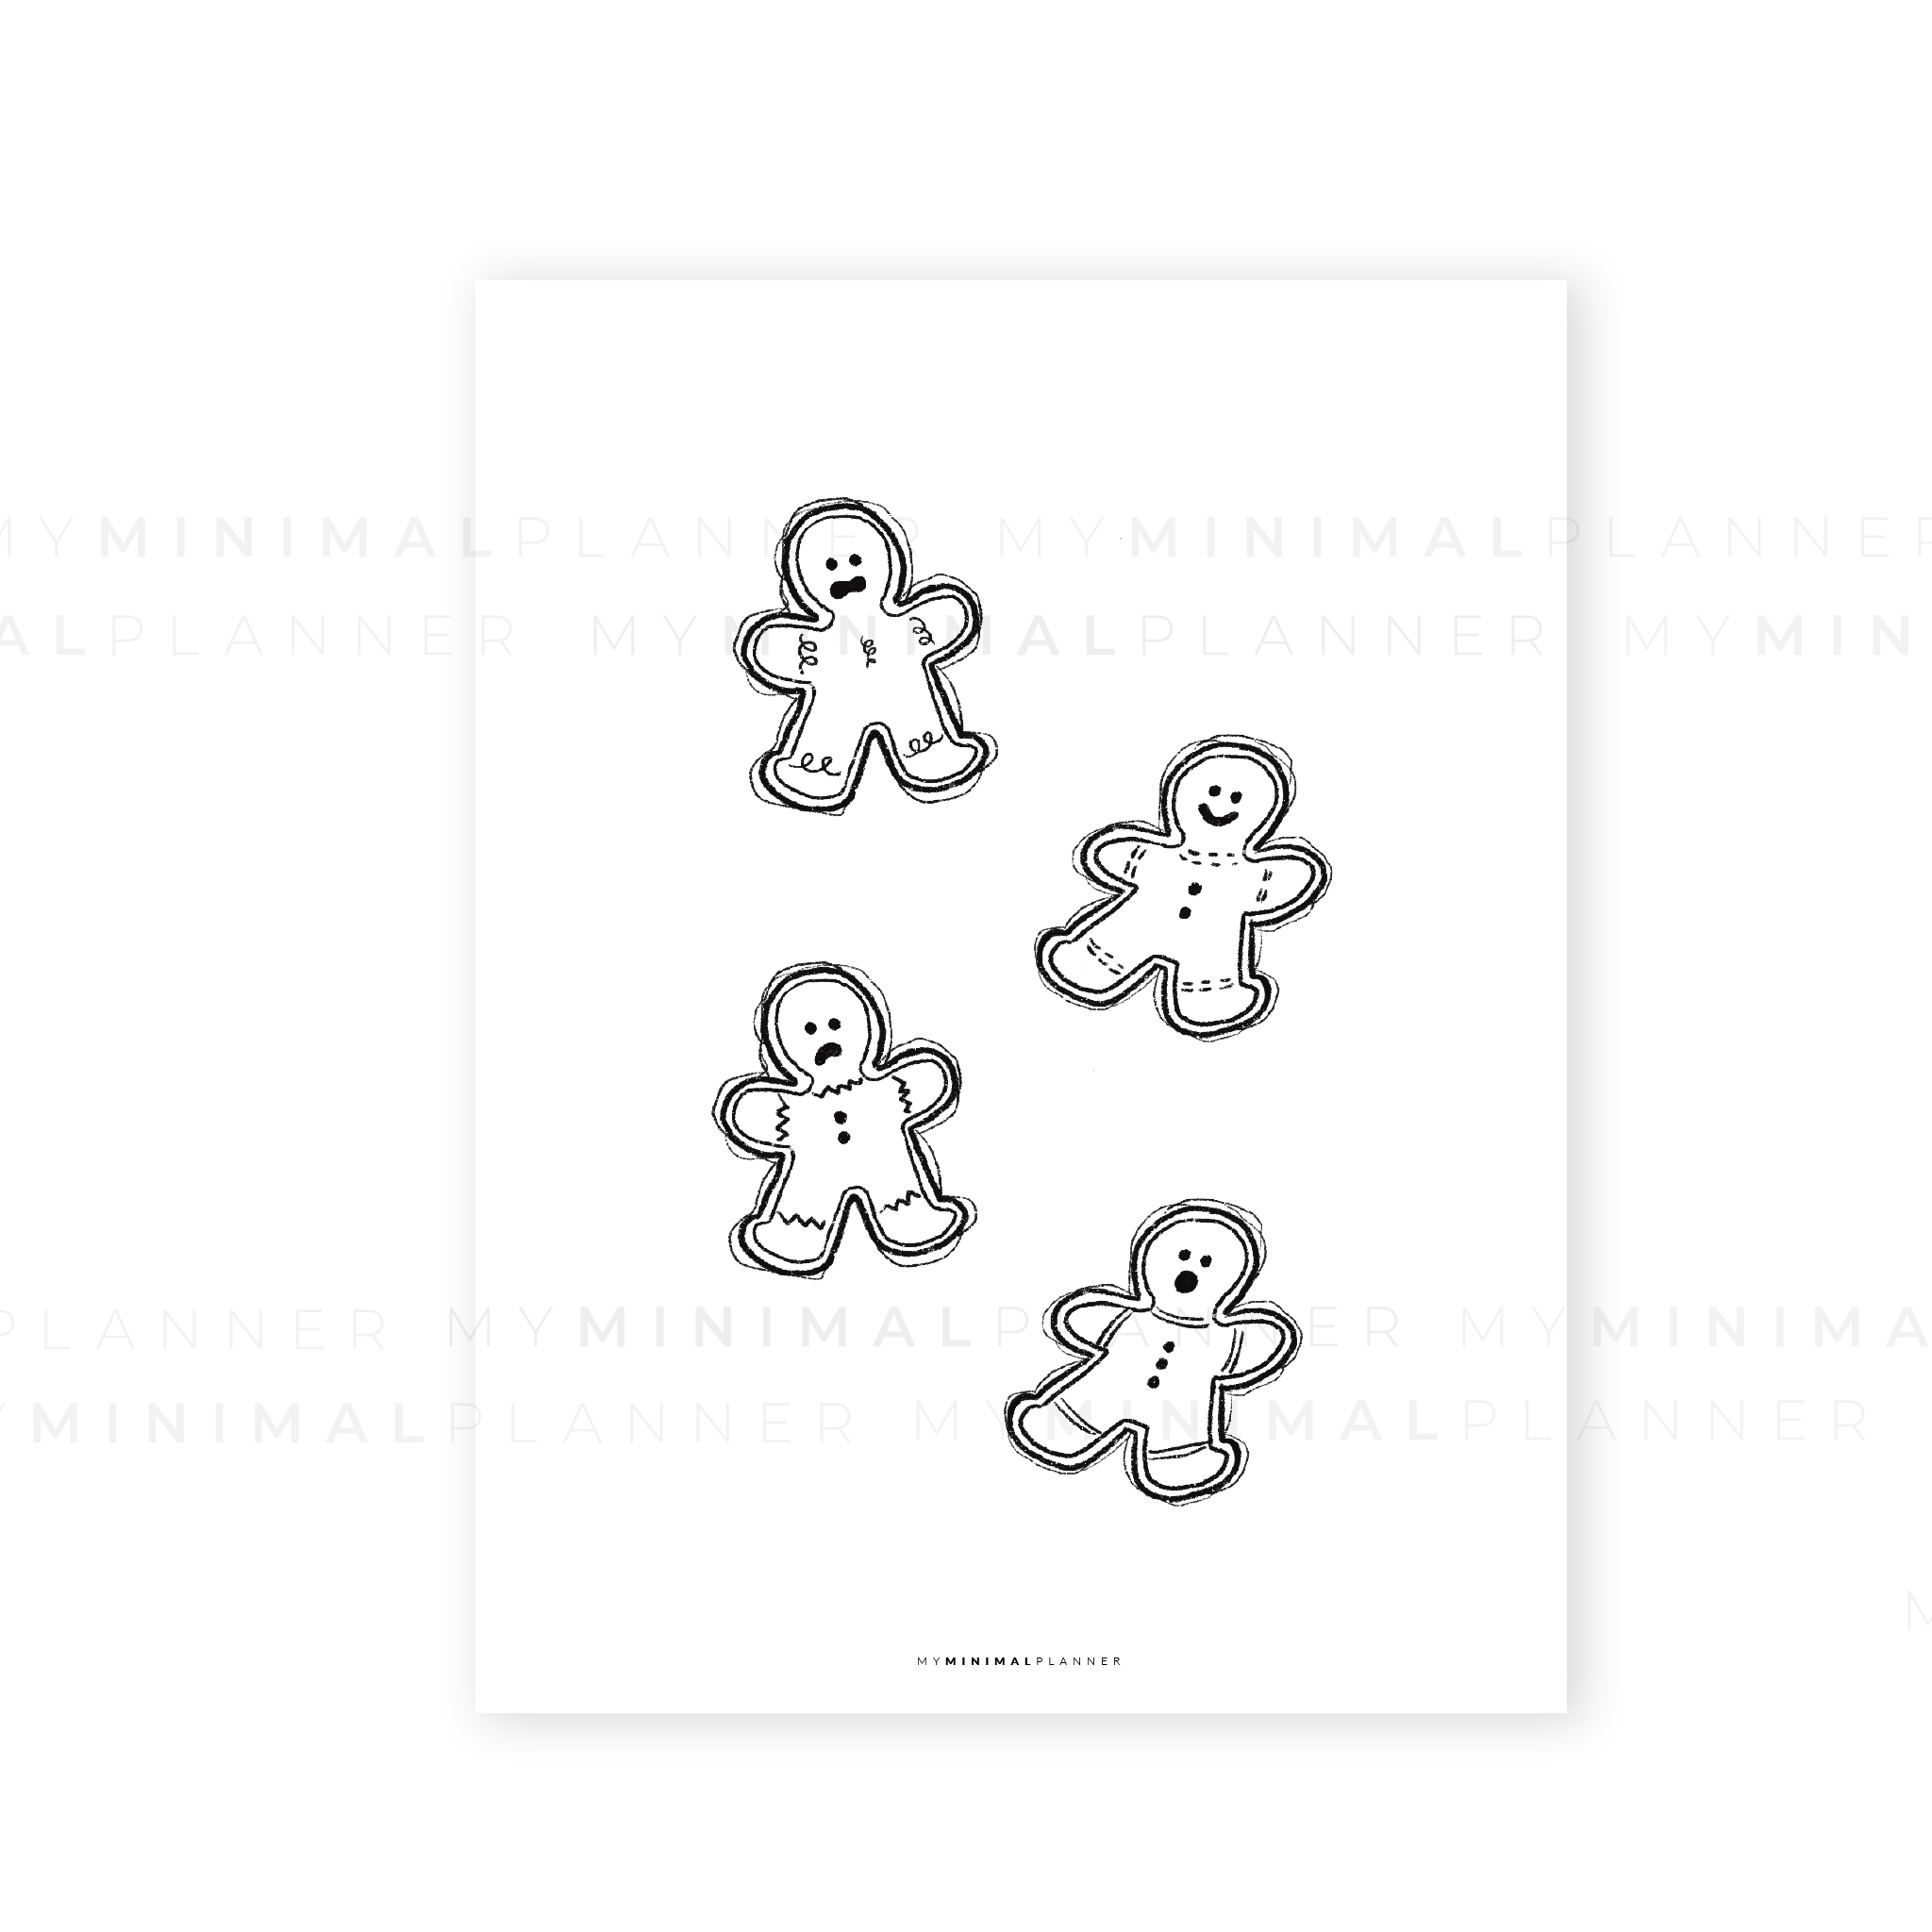 PRD154 - Gingerbread Cookies - Printable Dashboard